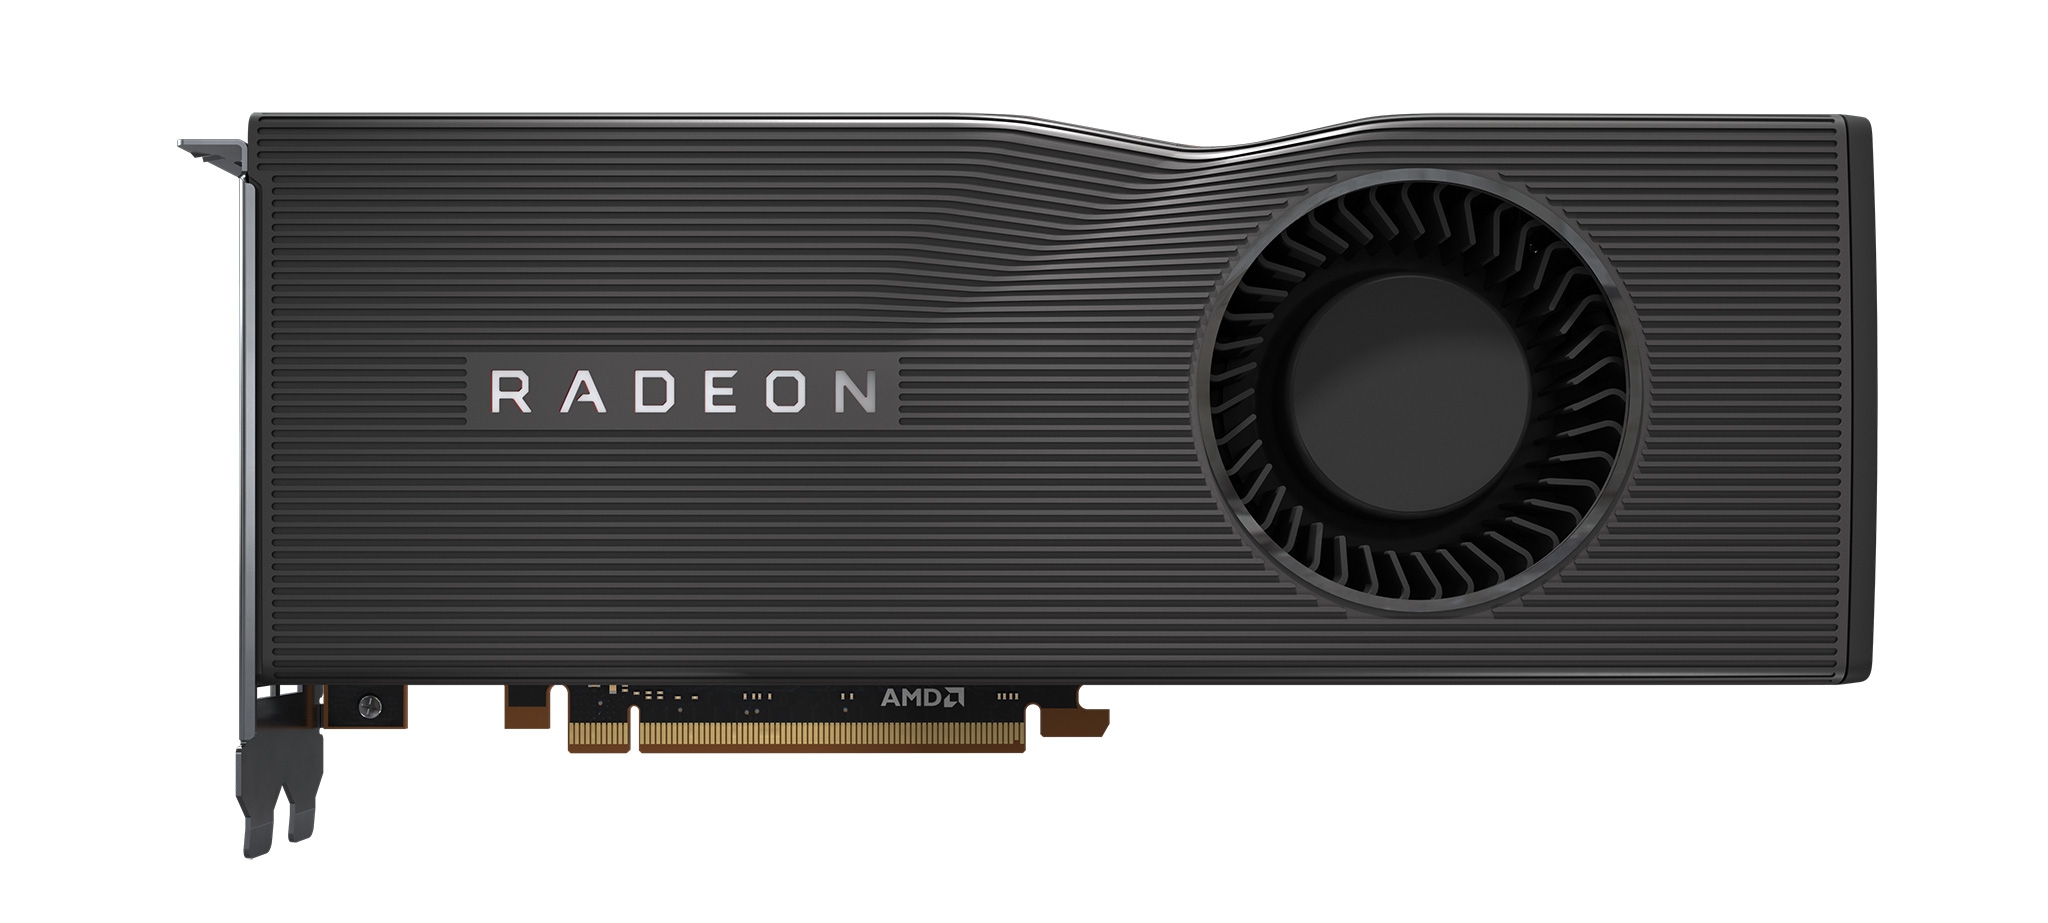 AMDから登場したPCIe 4.0対応GPU「Radeon RX 5700XT」を搭載したリファレンスグラフィックスカード。GPUコアは「RDNA」と呼ばれる新しいアーキテクチャーとなり、映像出力や動画関連機能を強化。位置付けはミドルハイで、エヌビディアのGeForce RTX 2060 SUPER／GeForce RTX 2070と競合関係にある （出所：AMD）